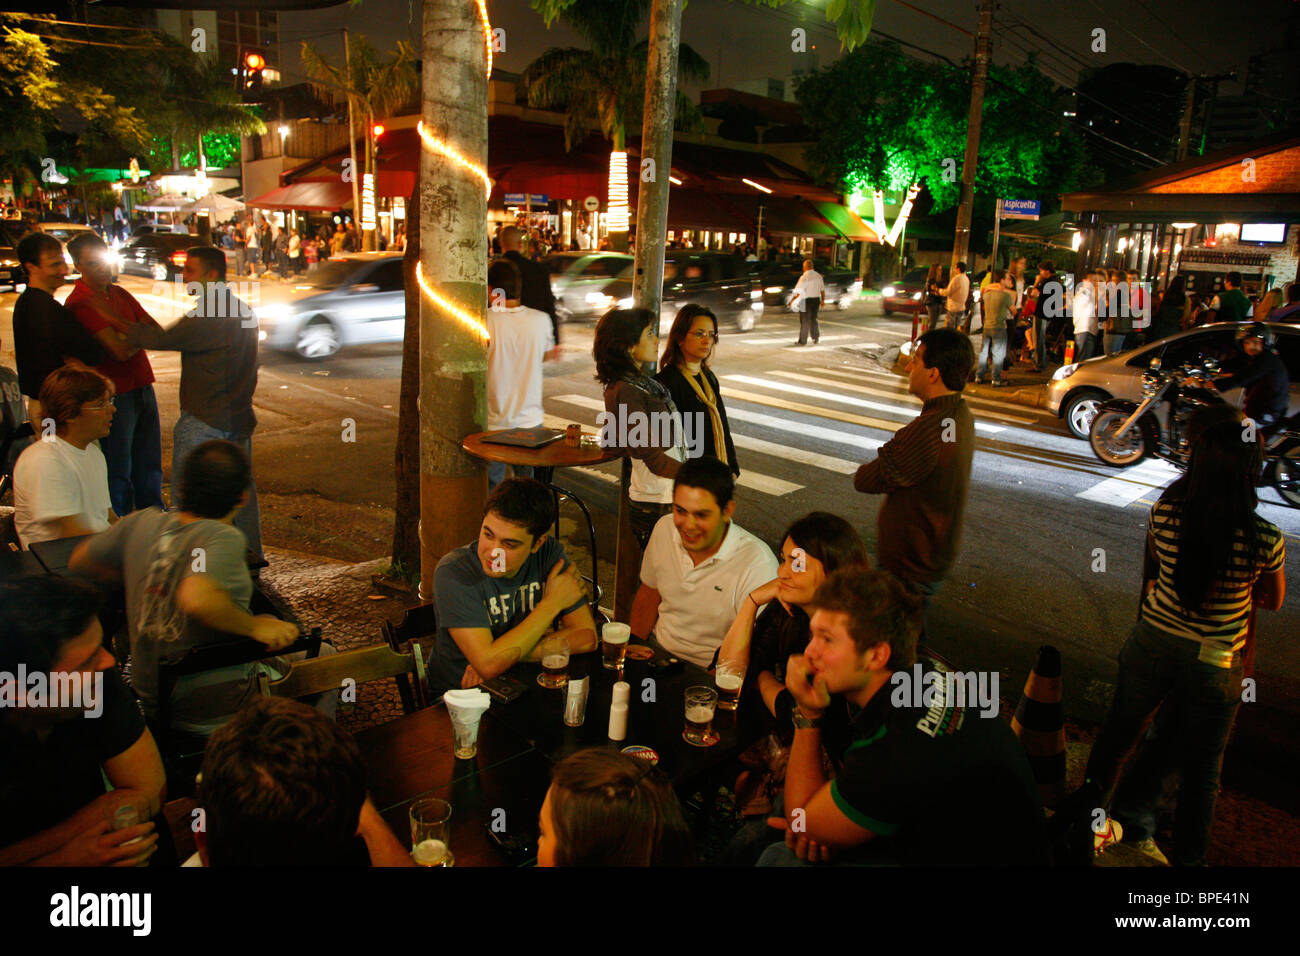 Les gens à la Vila Madalena quartier connu pour ses bars et restaurants nightlife scènes. Sao Paulo, Brésil. Banque D'Images